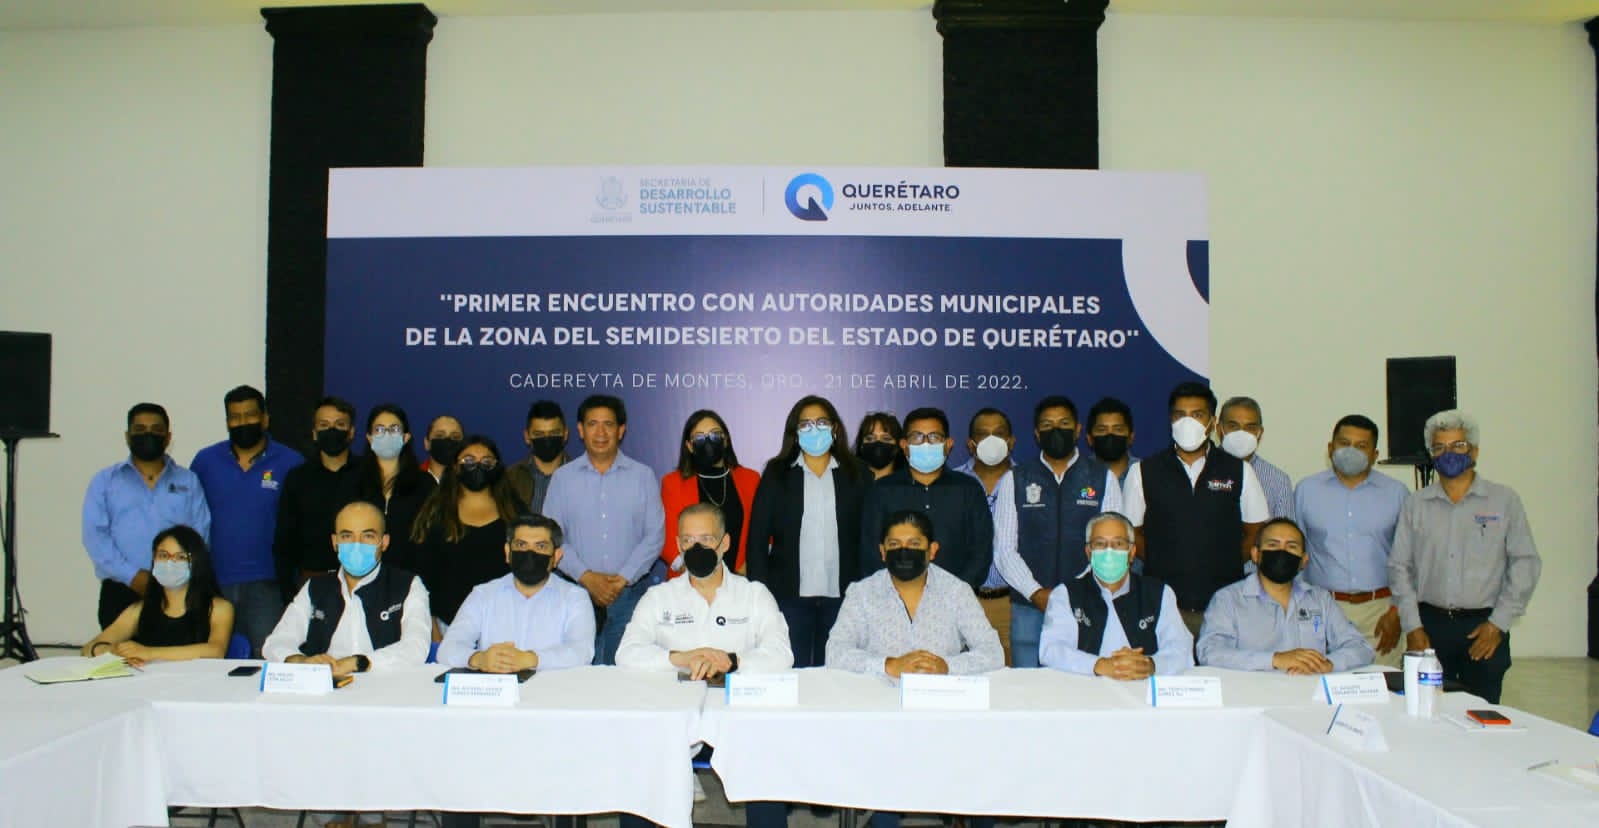 La finalidad del encuentro de autoridades del semidesierto fue dar a conocer la actualización de la legislación en materia ambiental del estado de Querétaro. (Especial)